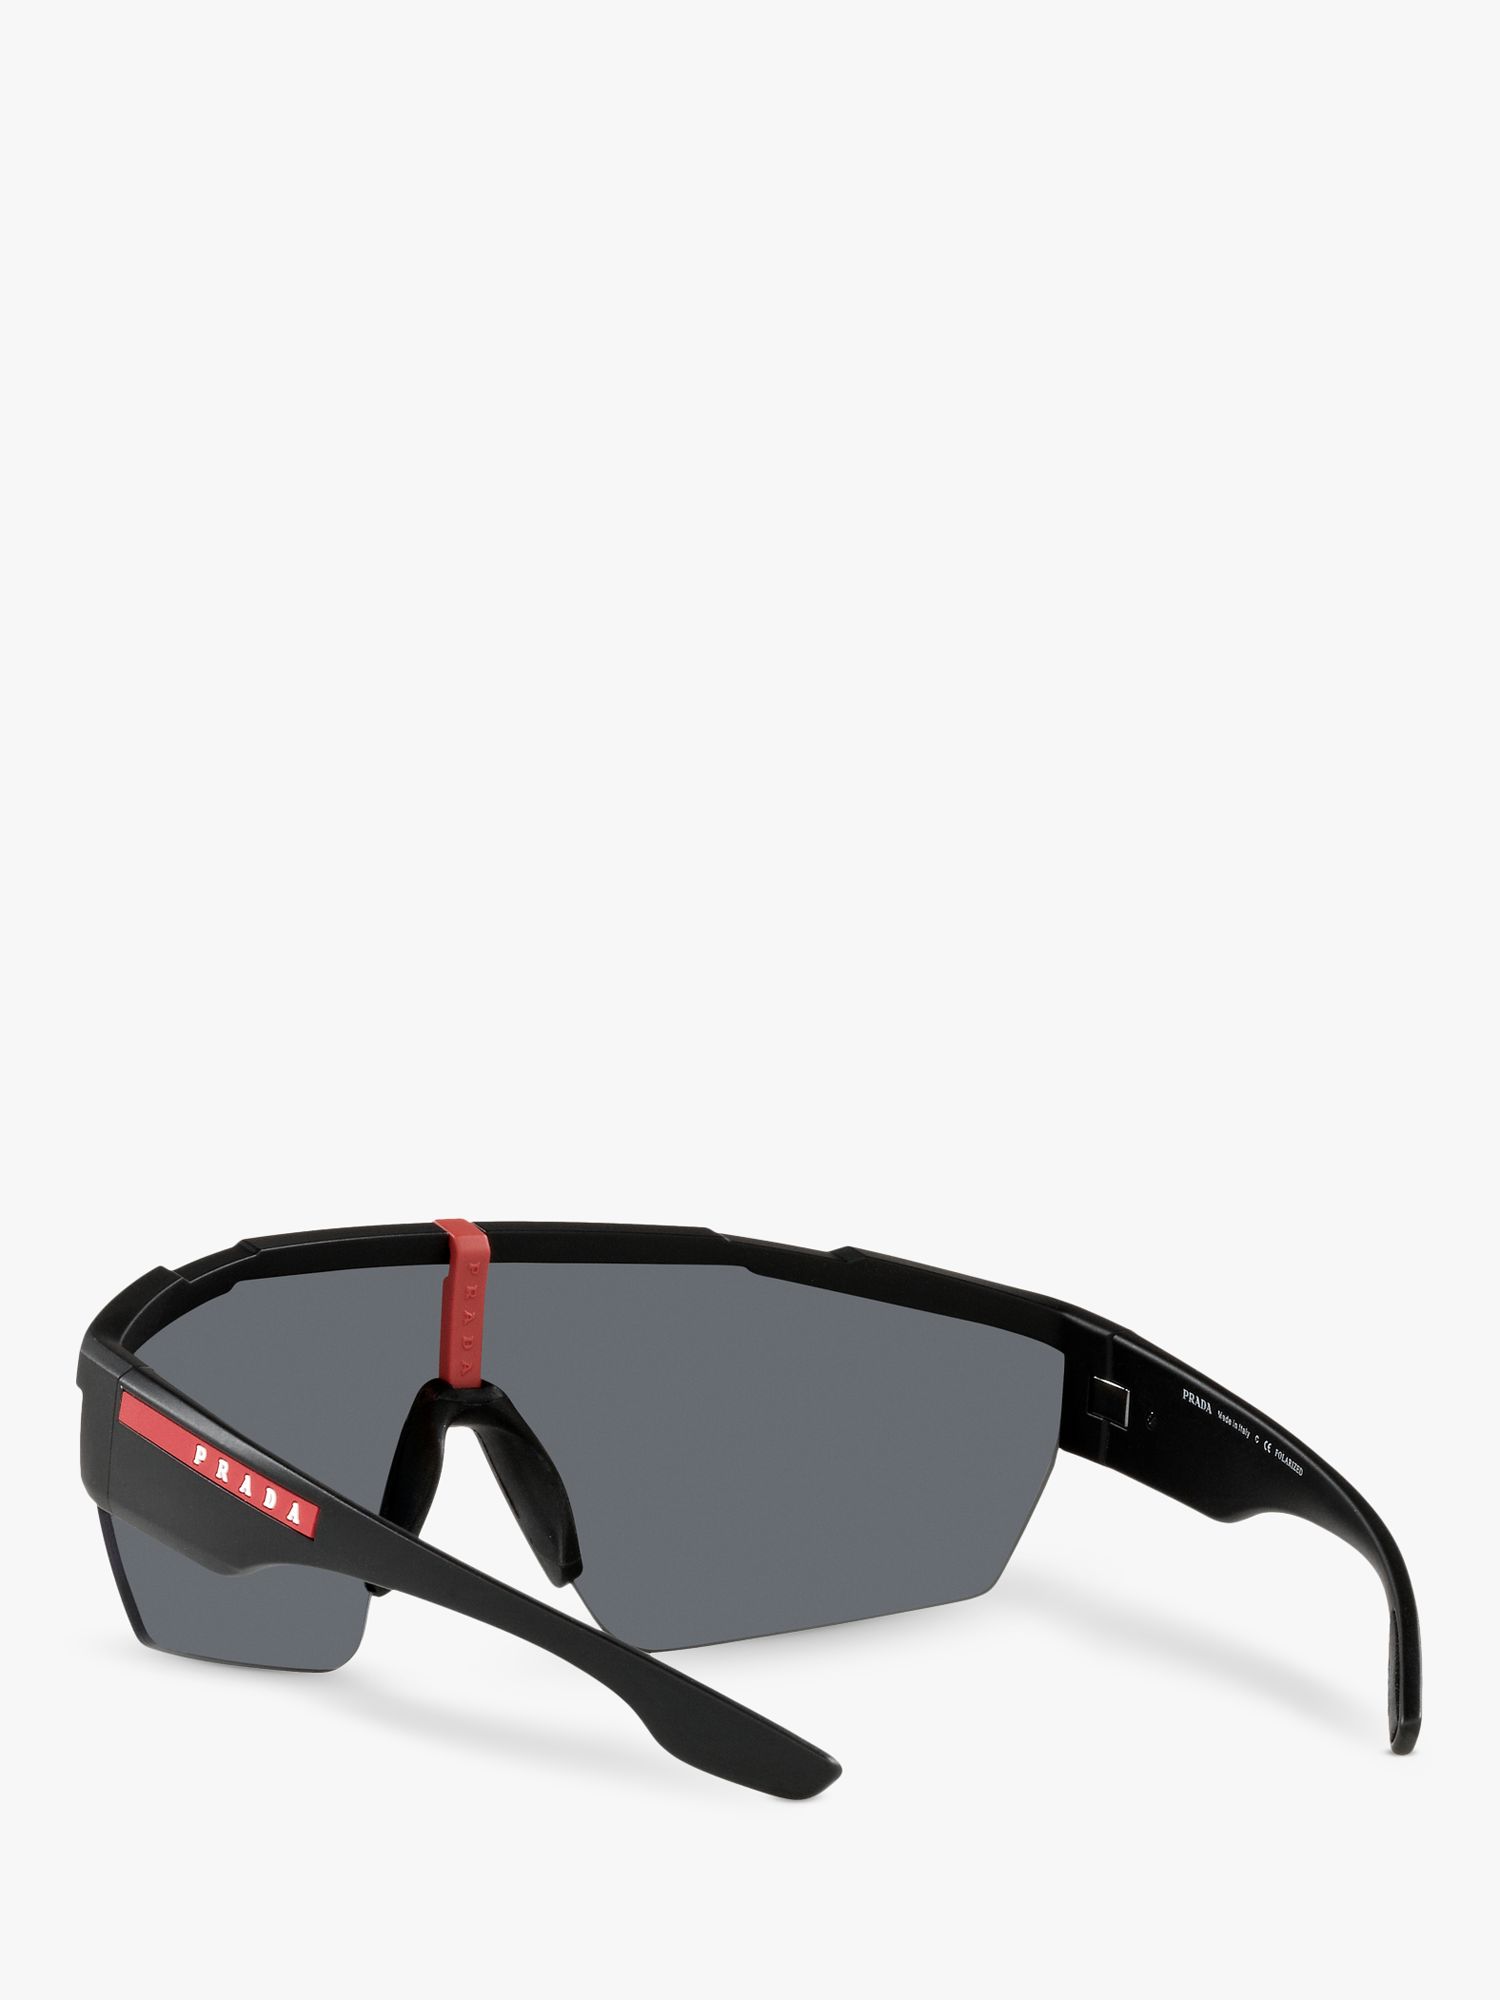 Buy Prada Linea Rossa PS 03XS Men's Polarised Sunglasses, Rubber Black Online at johnlewis.com